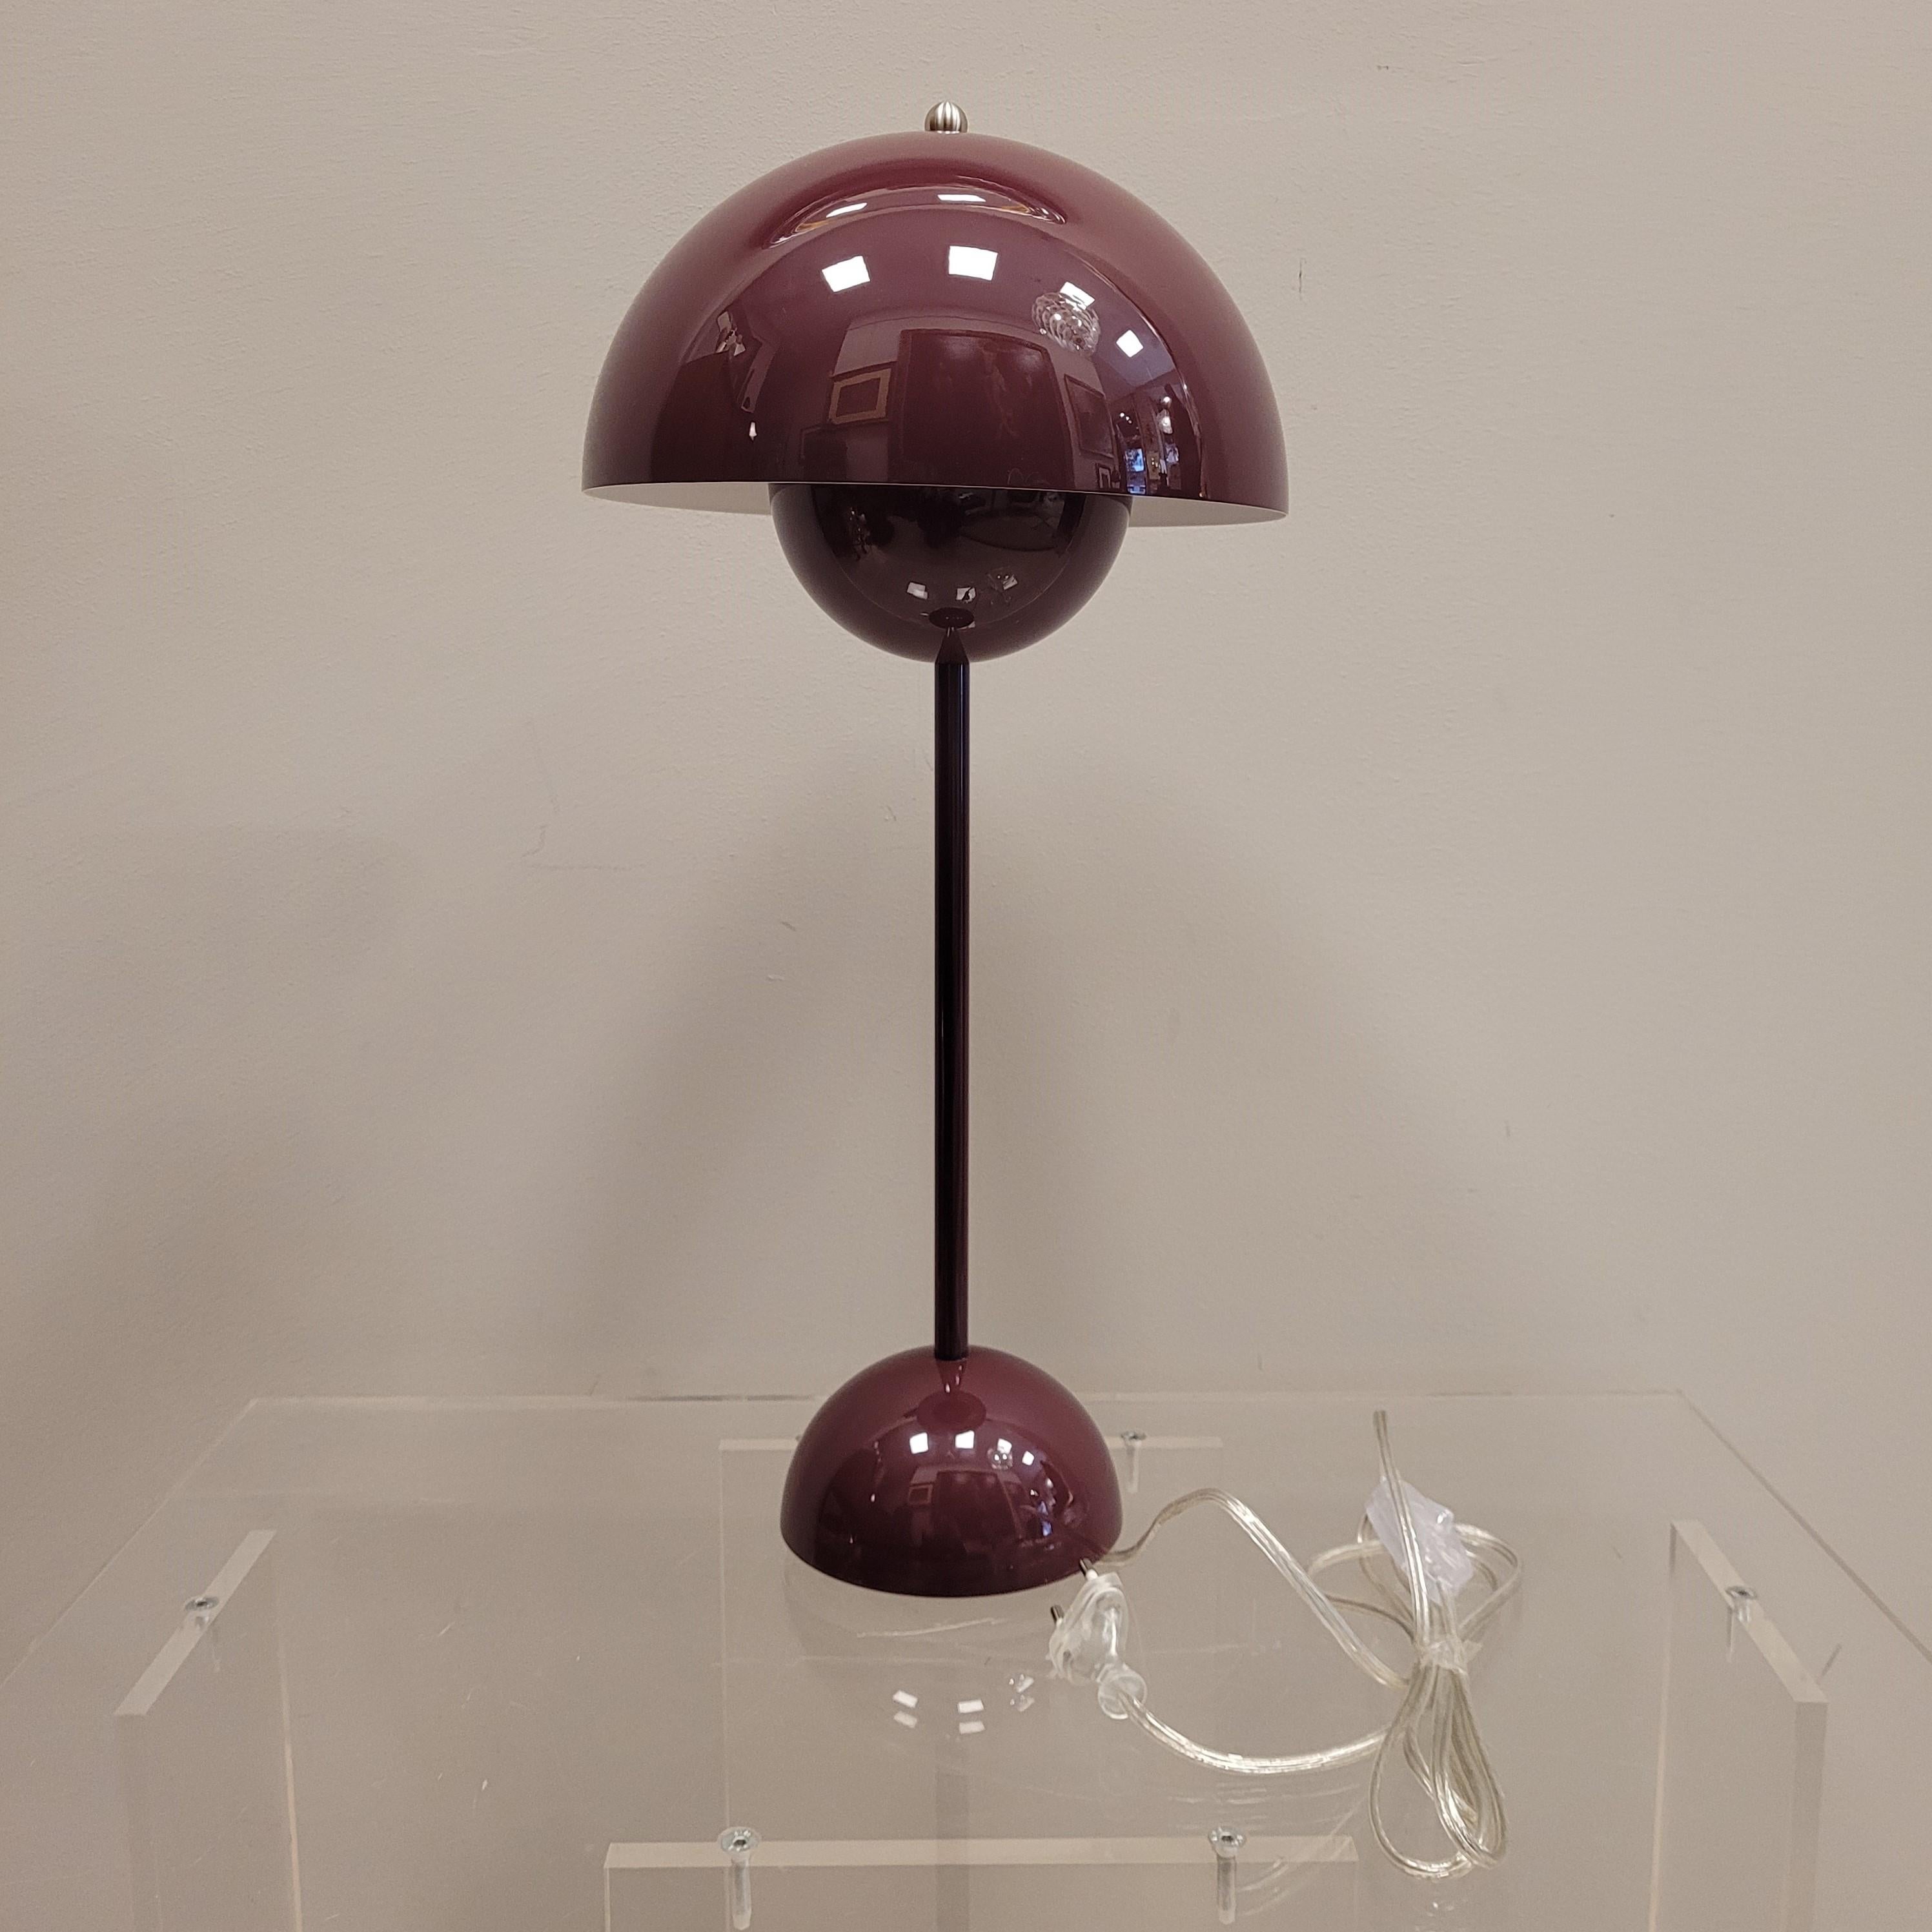 Schöne Lampe Design Verner Panton für &Tradition, 1968 in einem einzigen Burgunder Farbe. 90er Ausgabe
Das Konzept: Verner Panton Flowerpot ist eine ganz klassische, exklusive Retro-Lampe, wie sie 1968 entworfen wurde. Die Leuchte wurde zunächst in